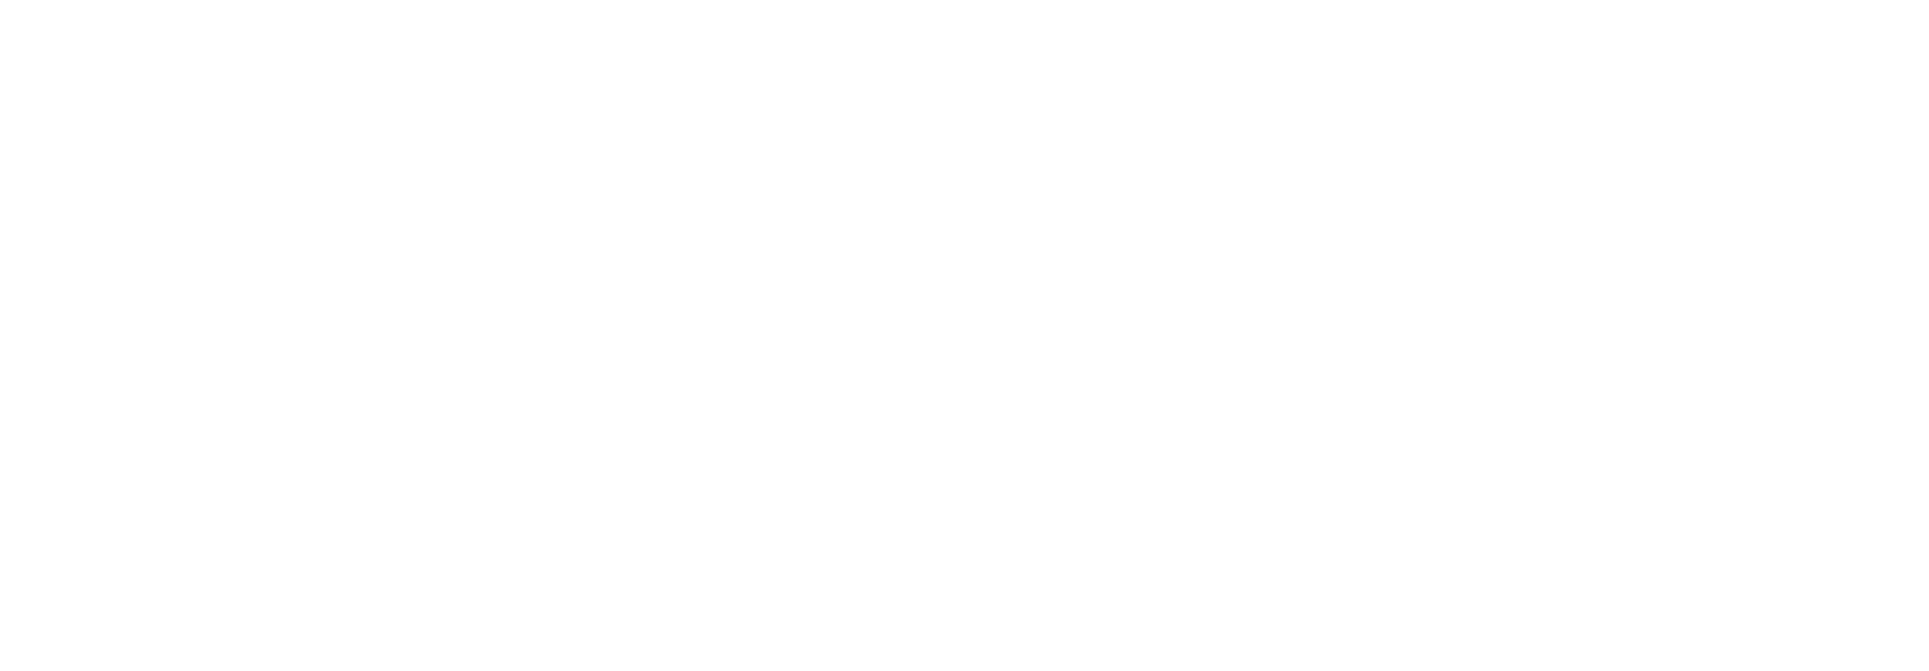 the gioi gau bong tot nghiep